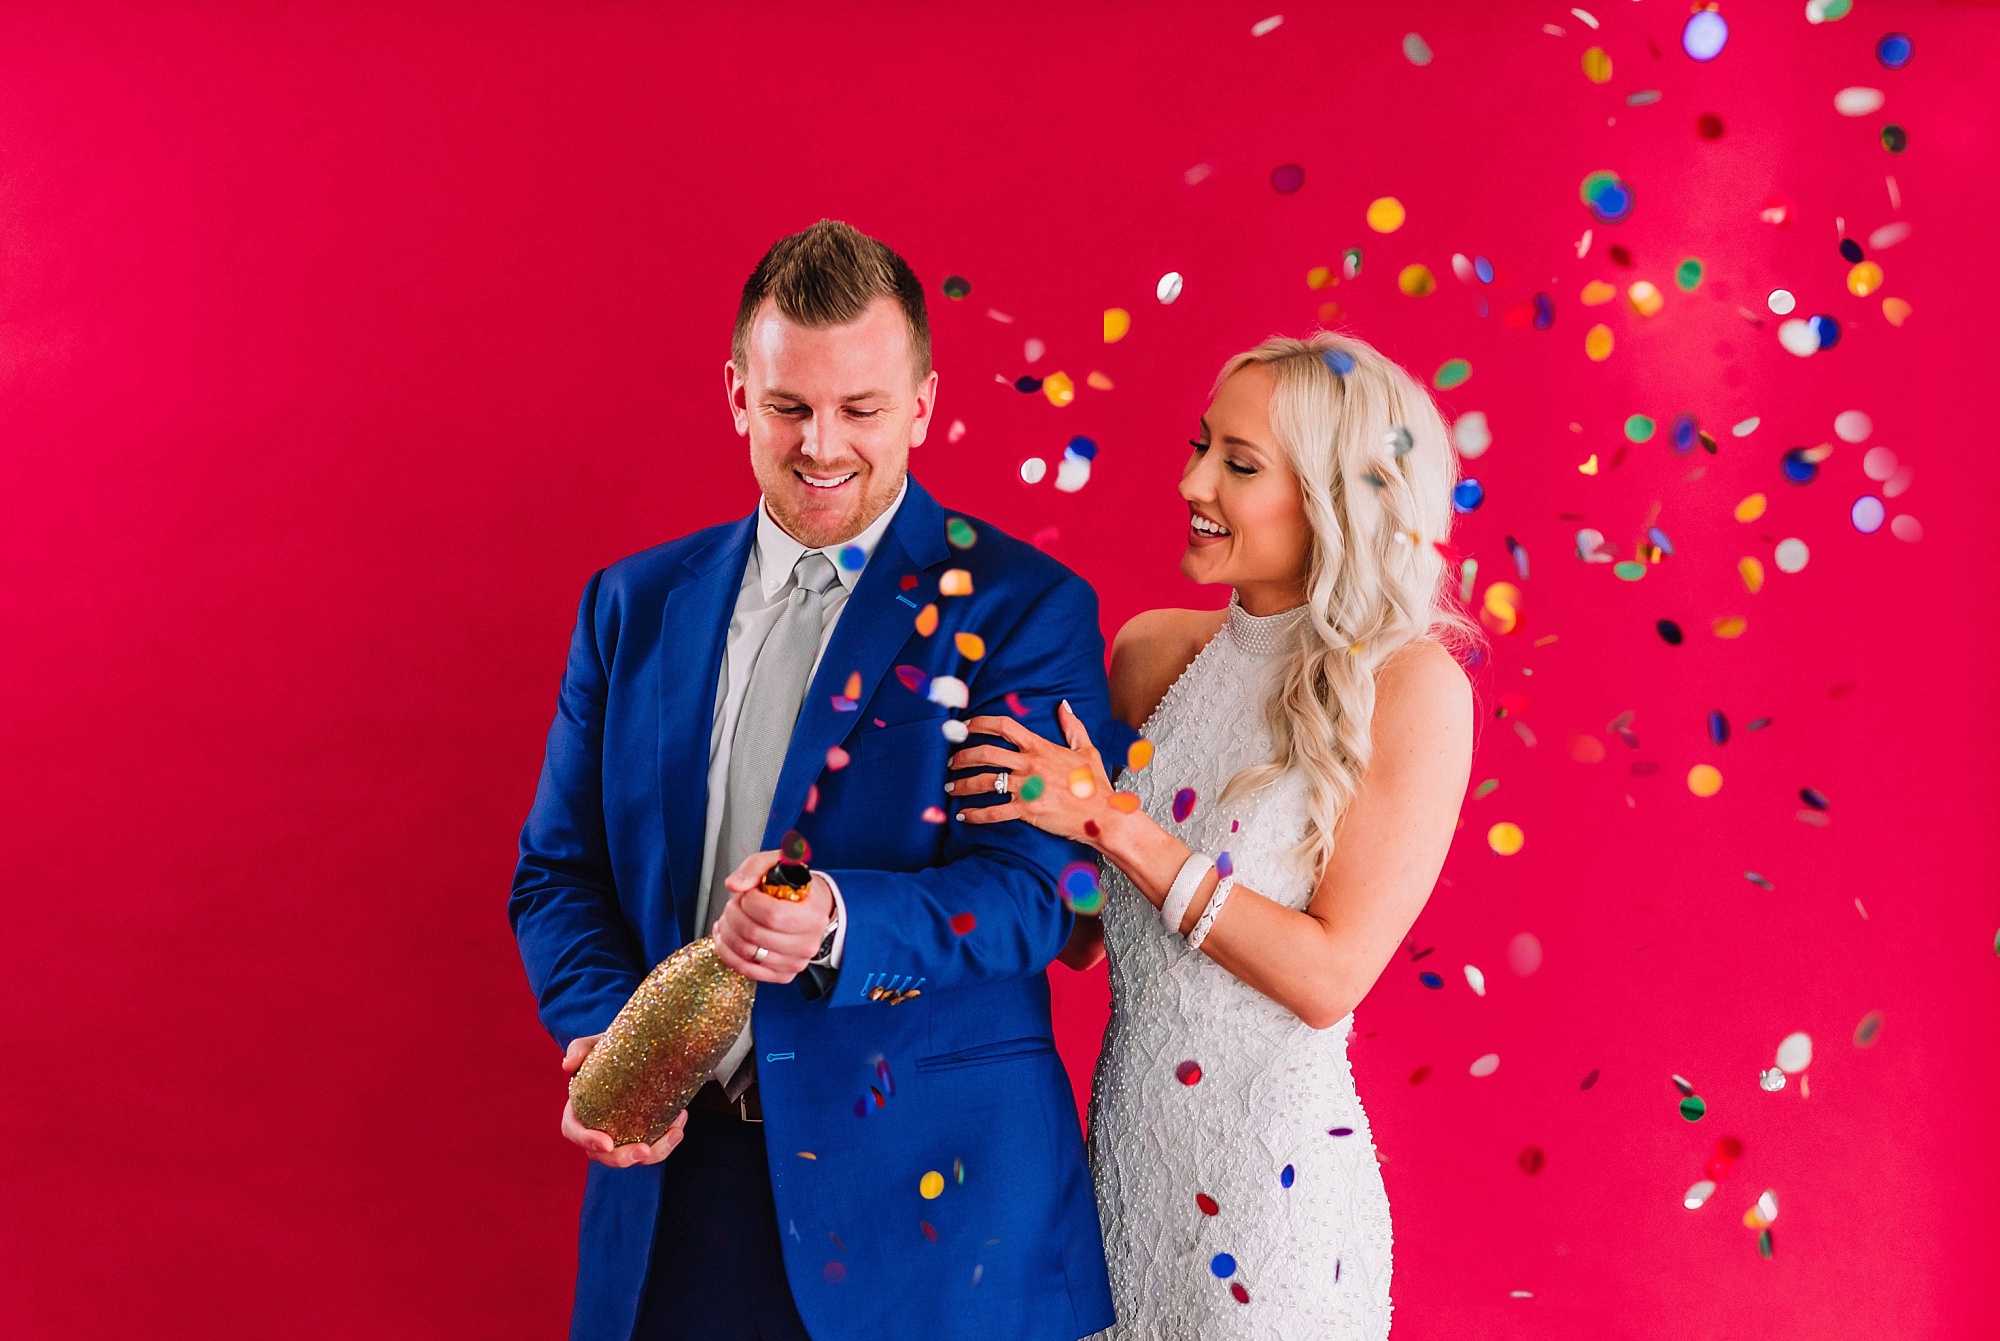 wedding-couple-champagne-bottle-confetti-popper-colorful-studio-backdrop